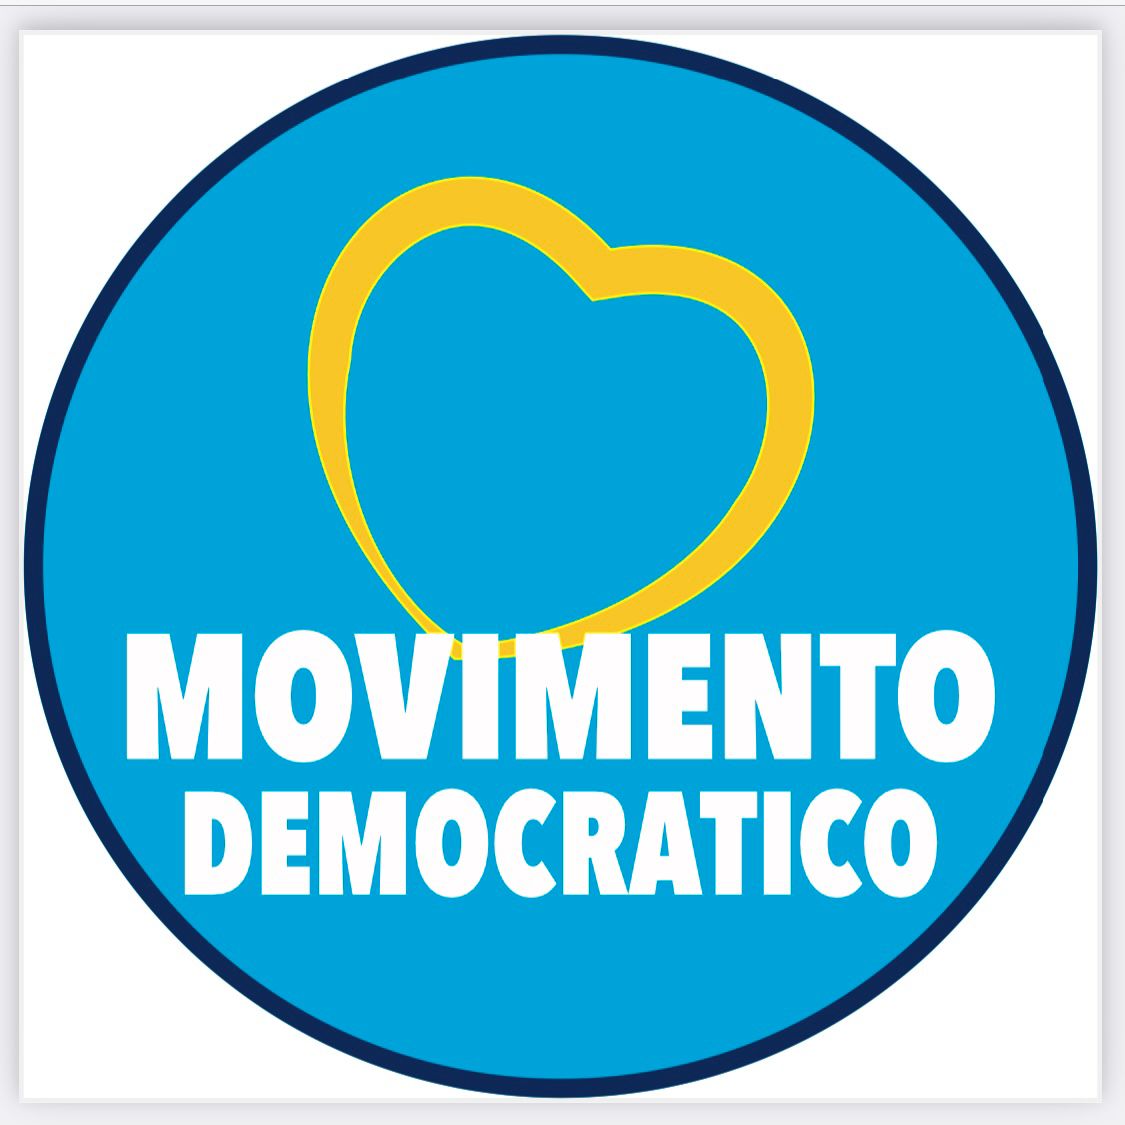 PONTECAGNANO FAIANO, IDEE ED OBIETTIVI DI MOVIMENTO DEMOCRATICO: “UN GRANDE PROGETTO CIVICO”